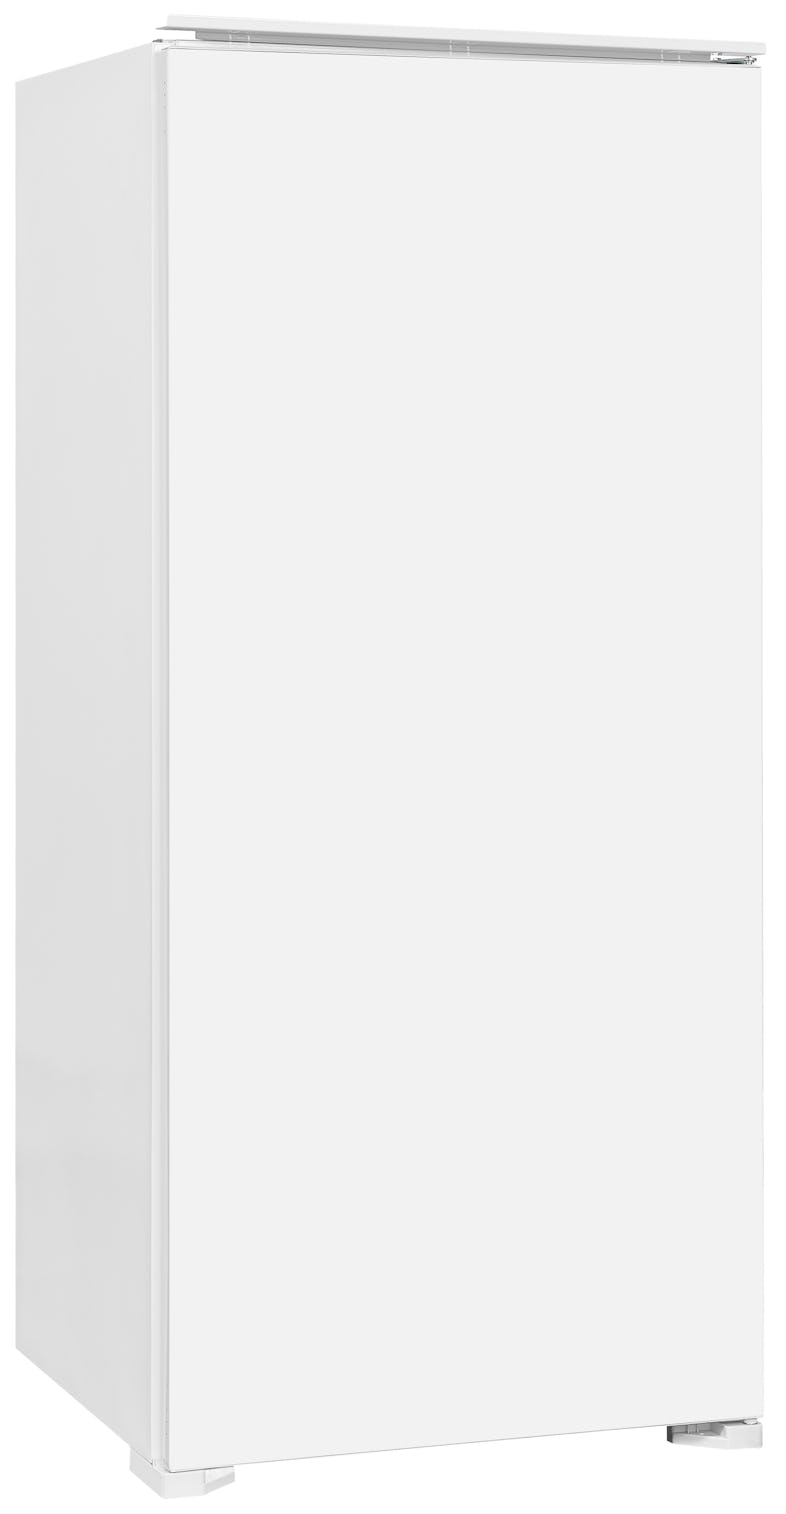 Exquisit Einbau Weiß 199 Nutzinhalt EKS201-V-E-040F | Vollraumkühlschrank l Marktplatz | METRO 